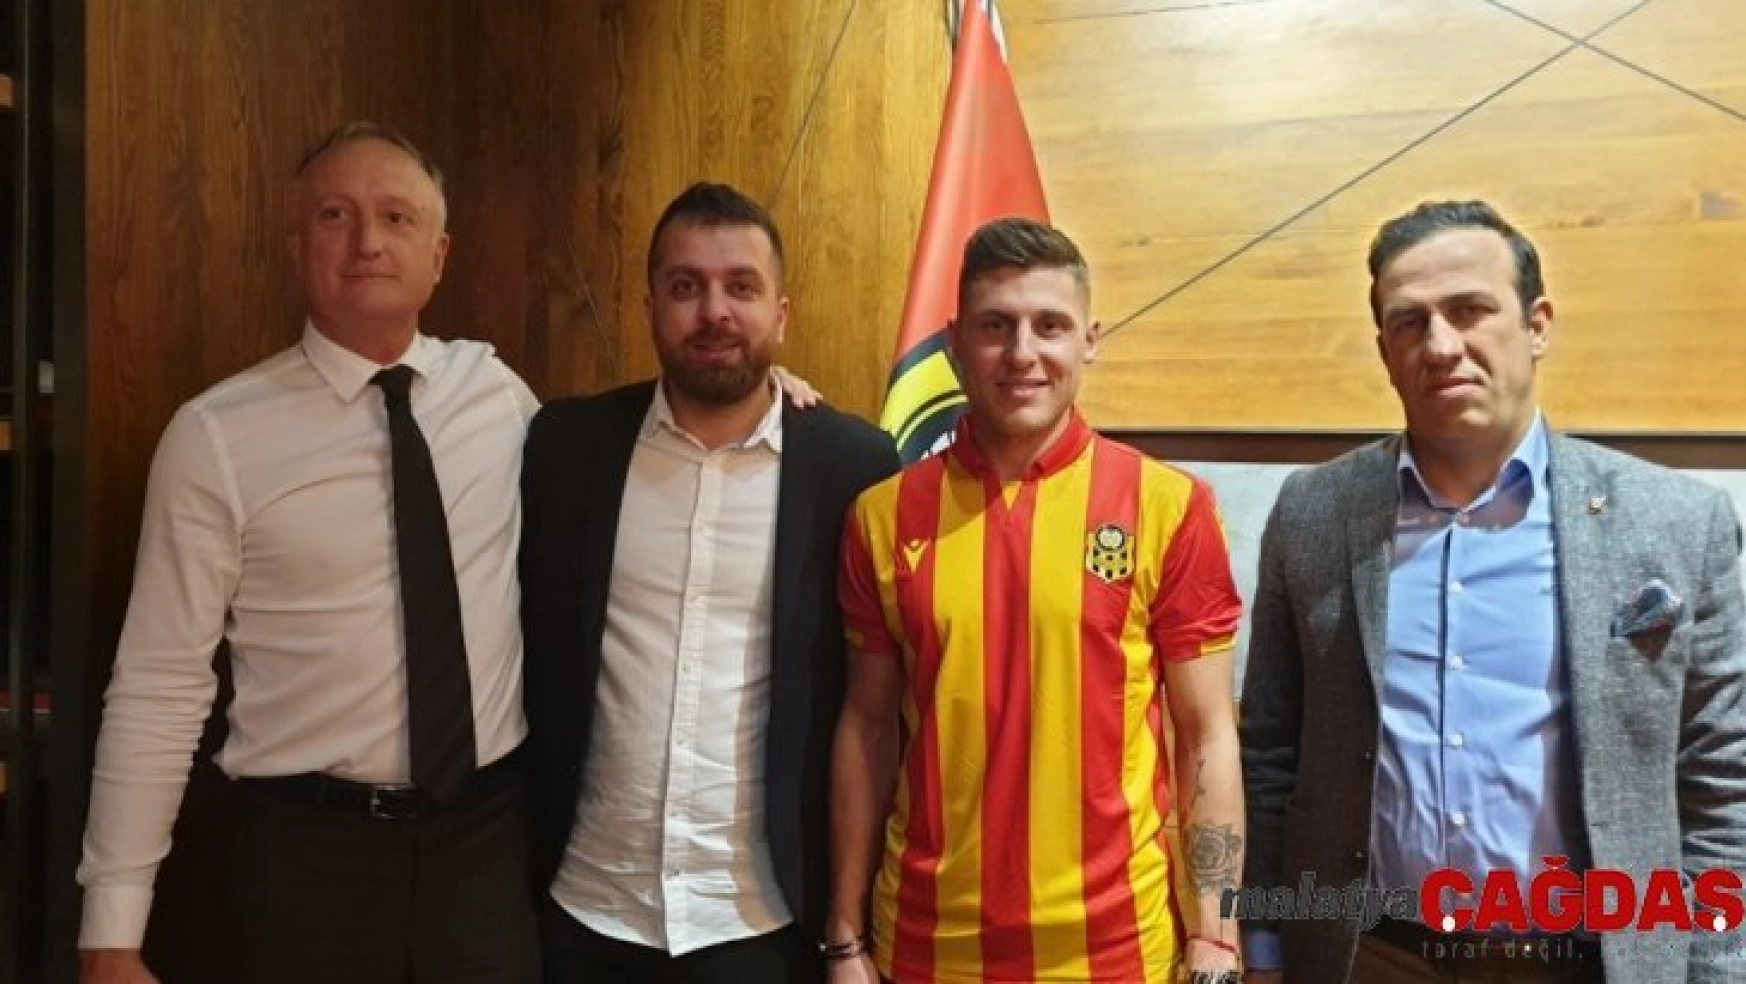 Yeni Malatyaspor'da transfer çalışmaları